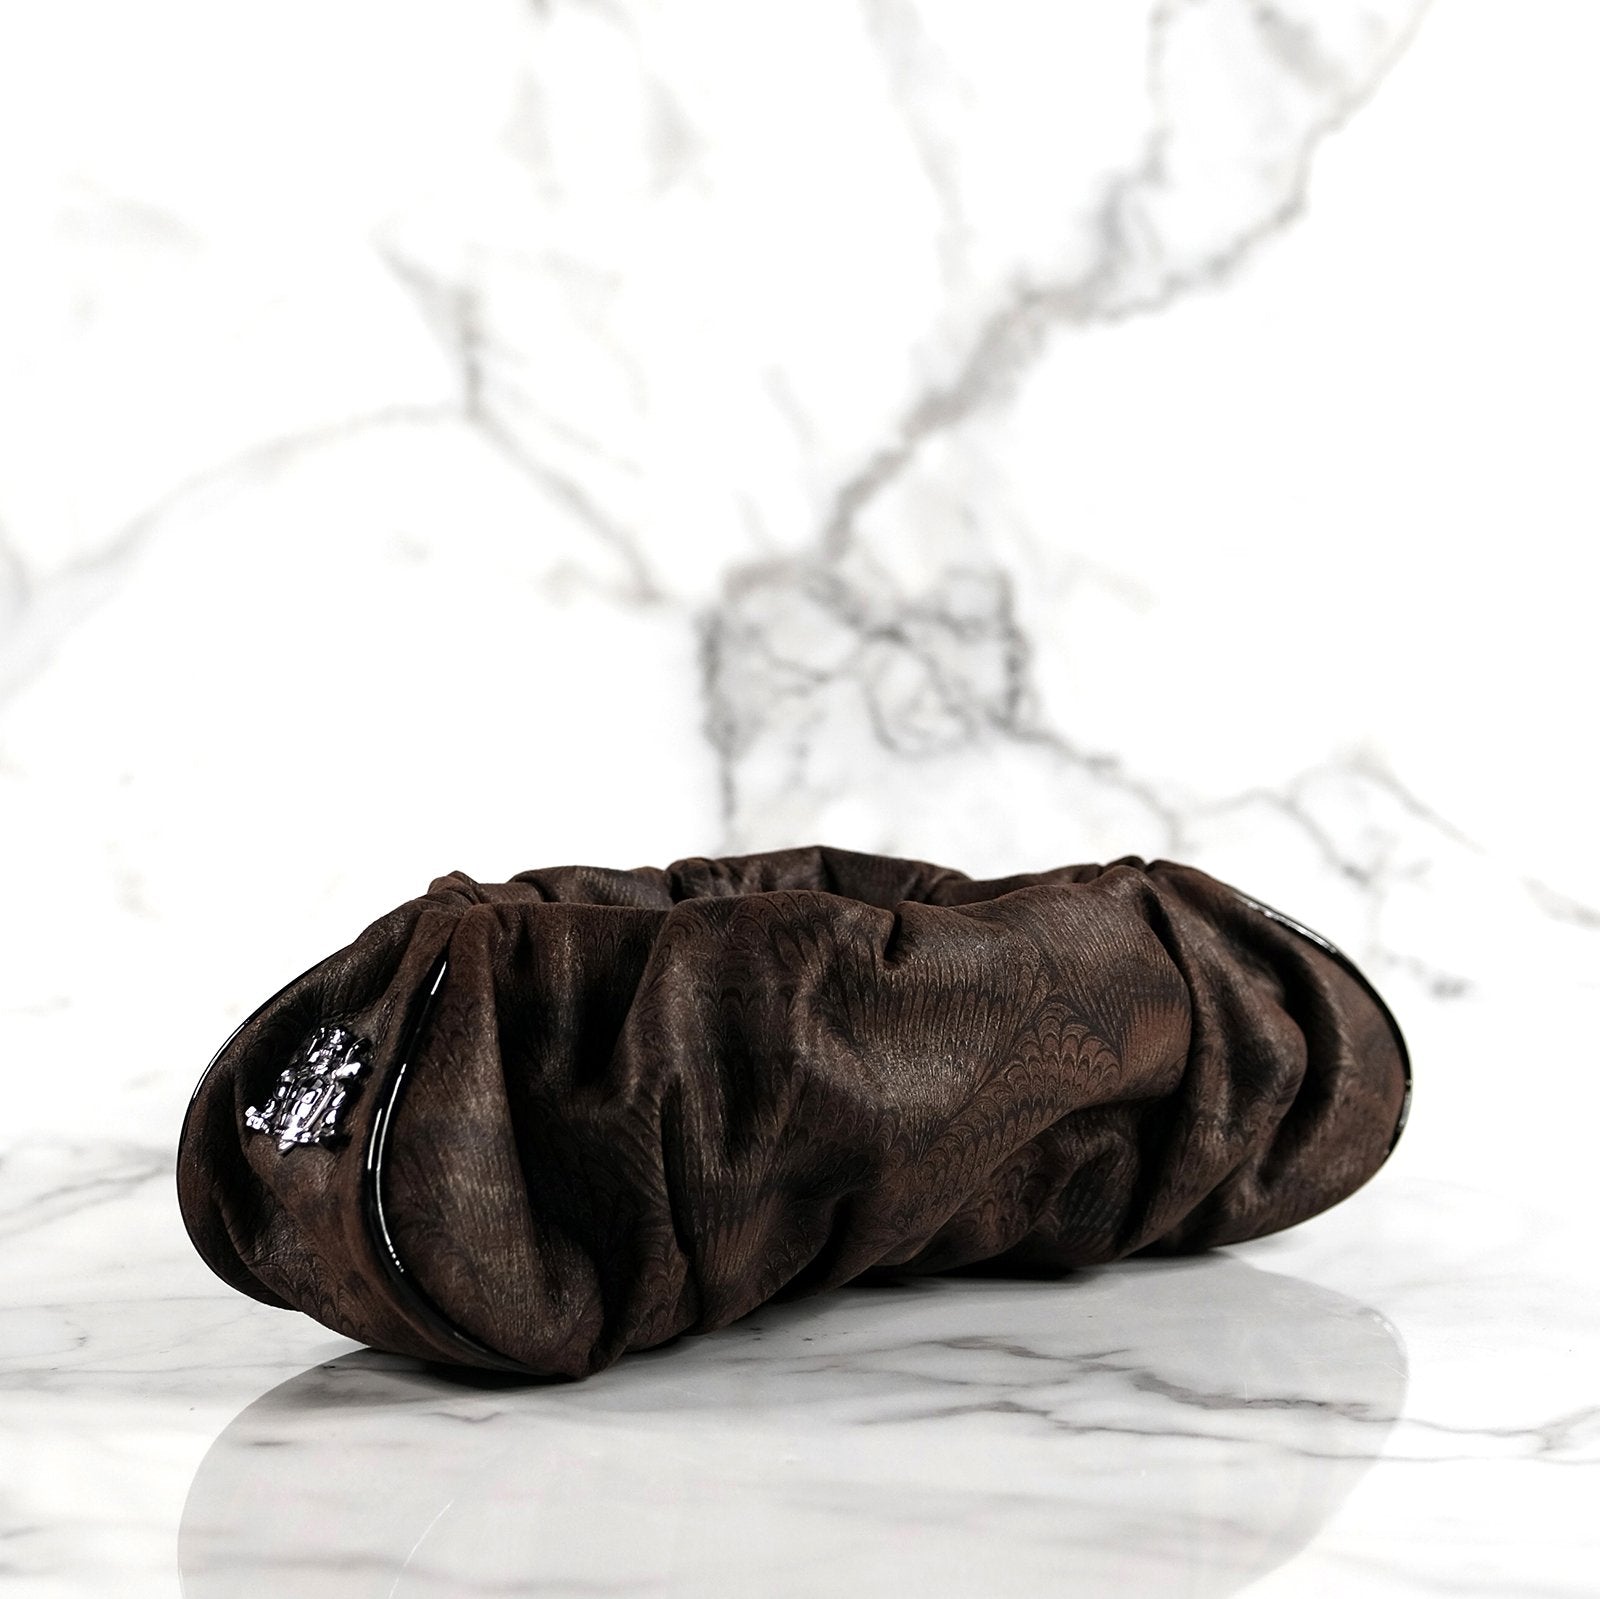 Priscilla marbleized chocolate brown leather handbag